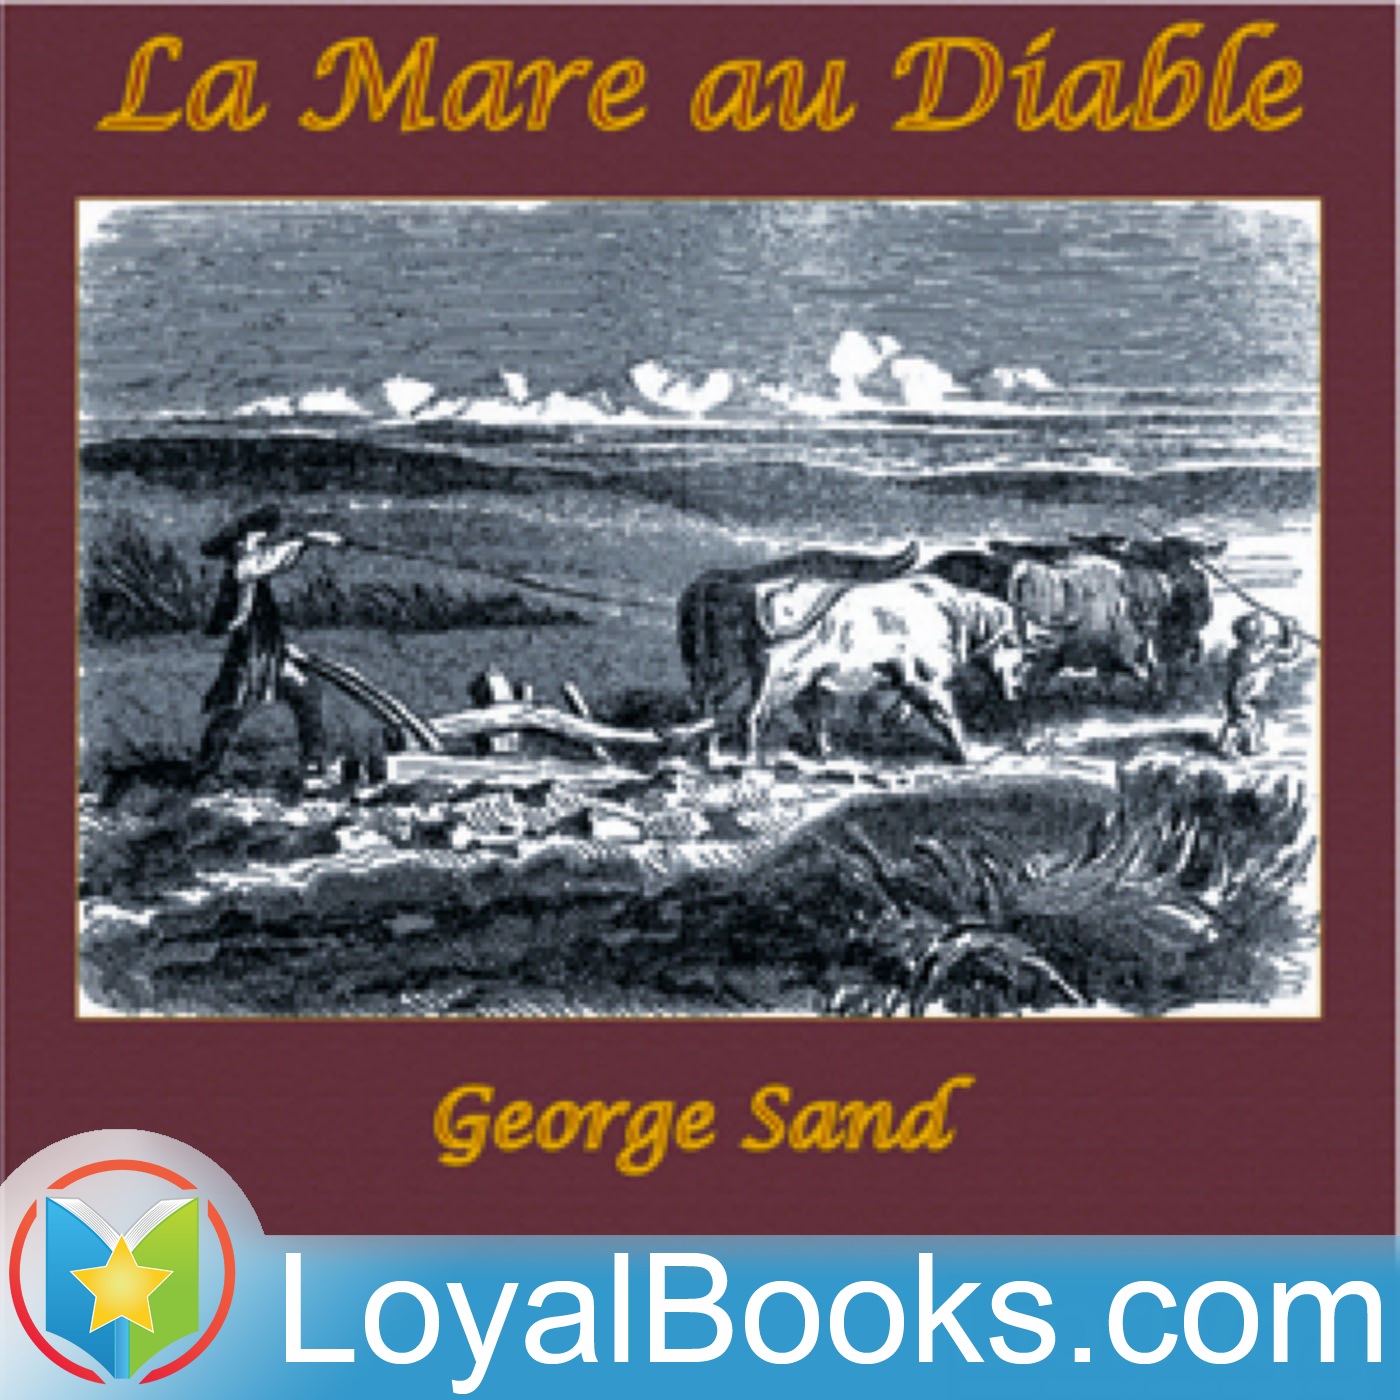 La mare au diable by George Sand